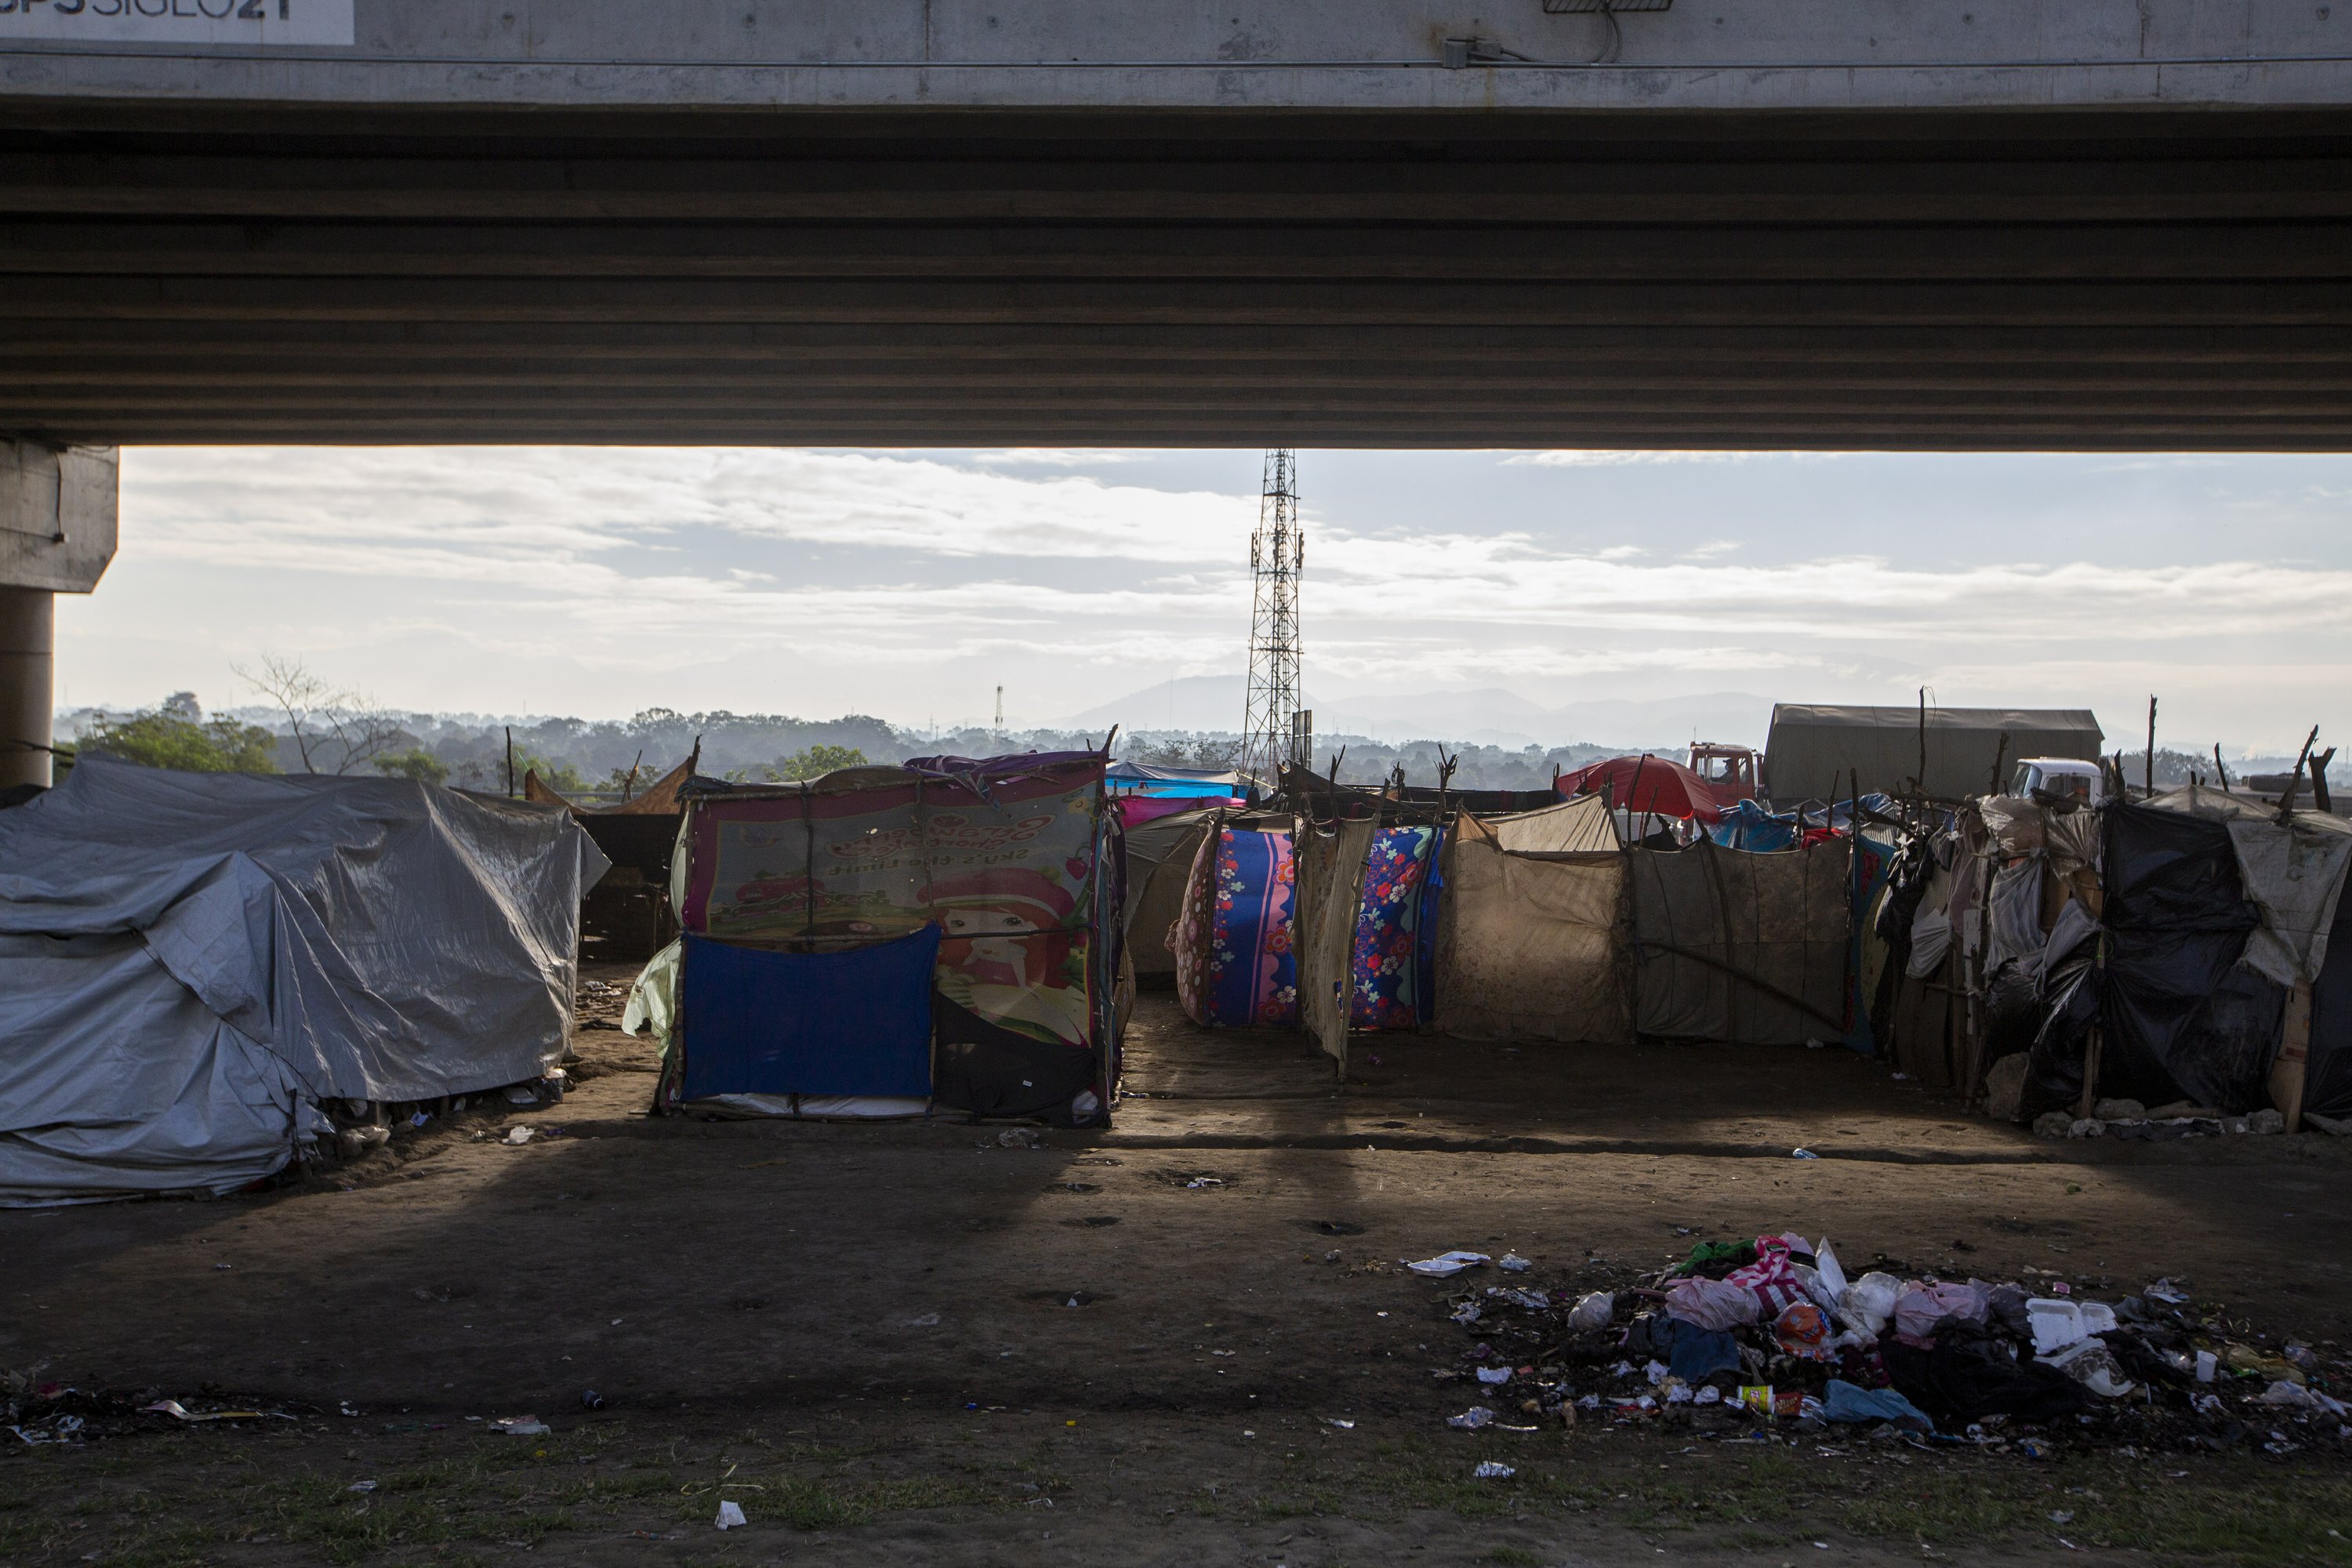 Despair is growing in Honduras, beaten, fueling migration